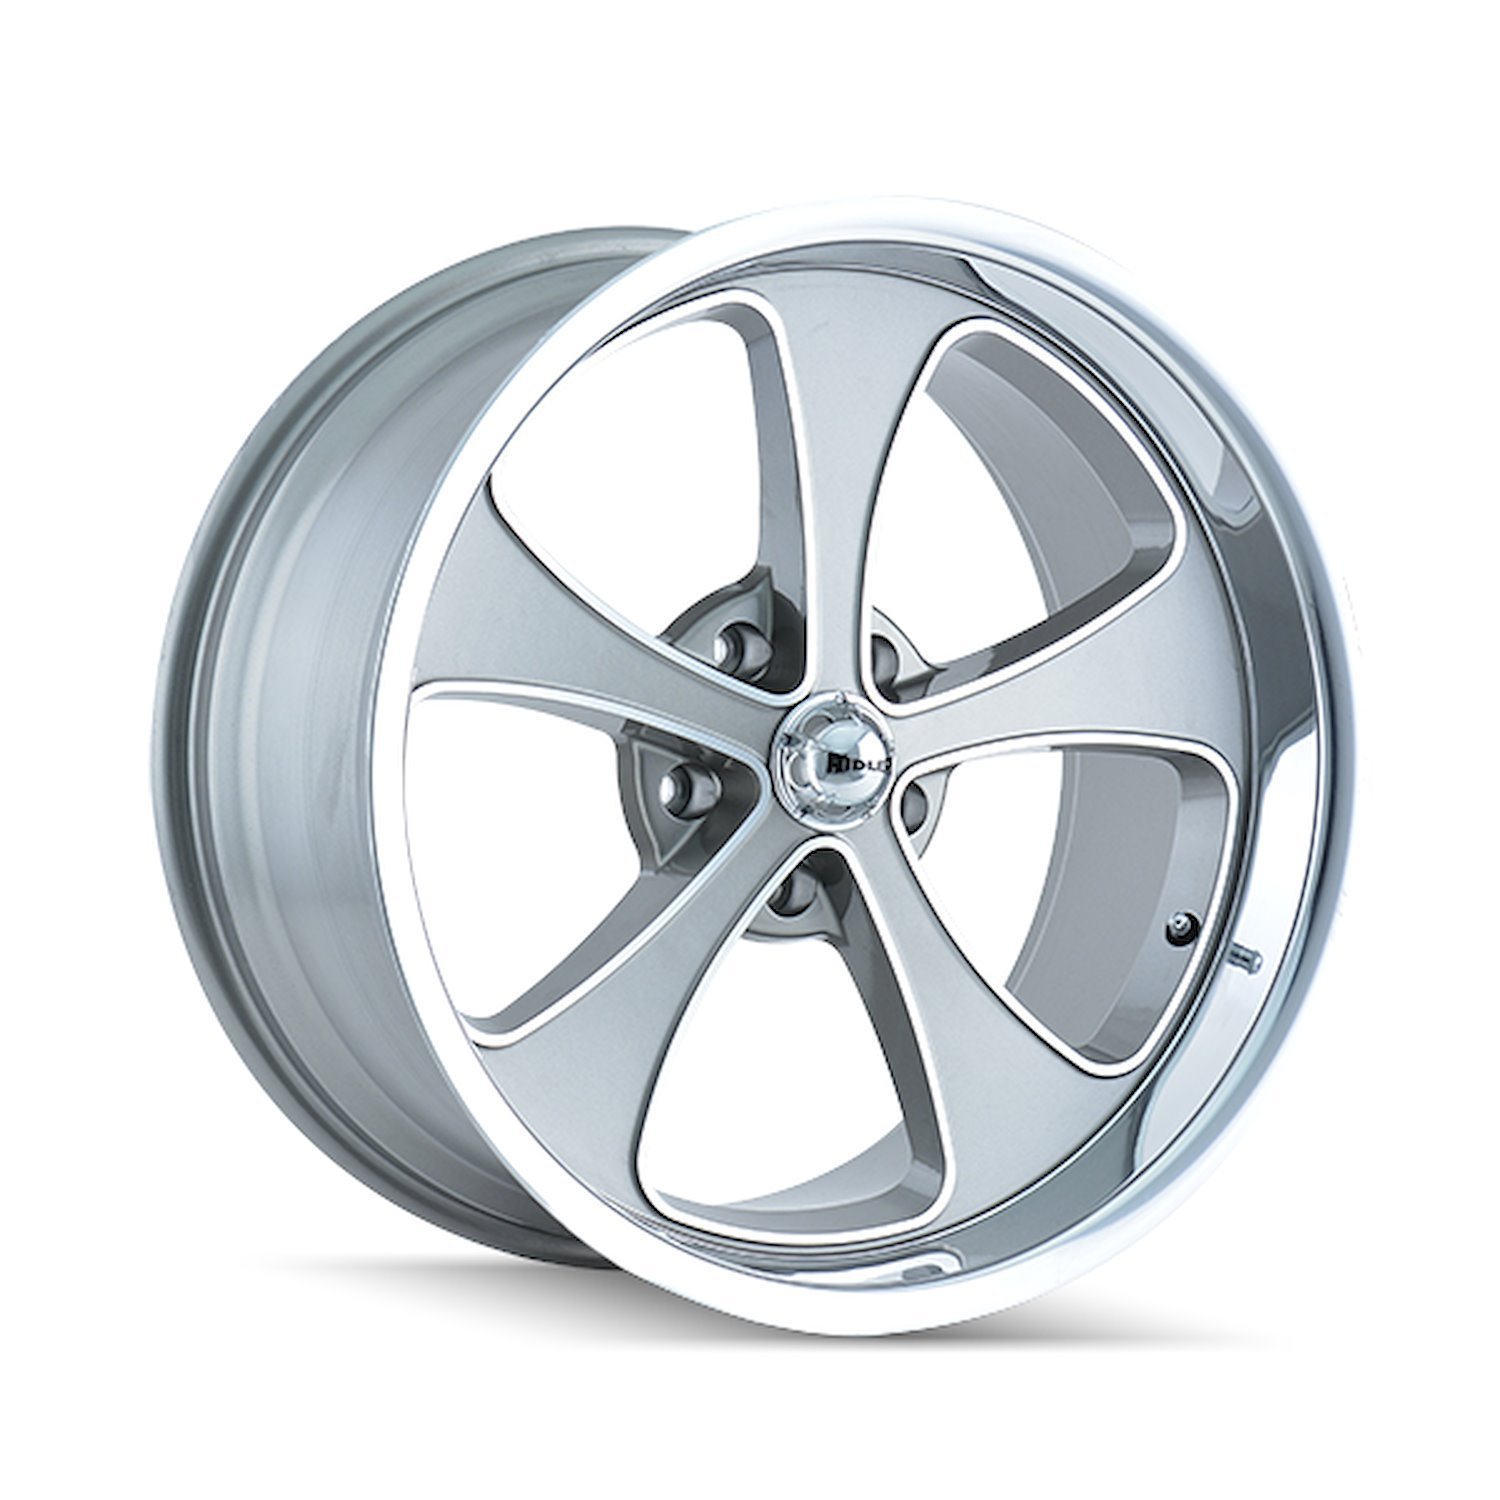 645-2861GP 645-Series Wheel [Size: 20" x 8.50"] Gloss Grey Machined/Polished Finish